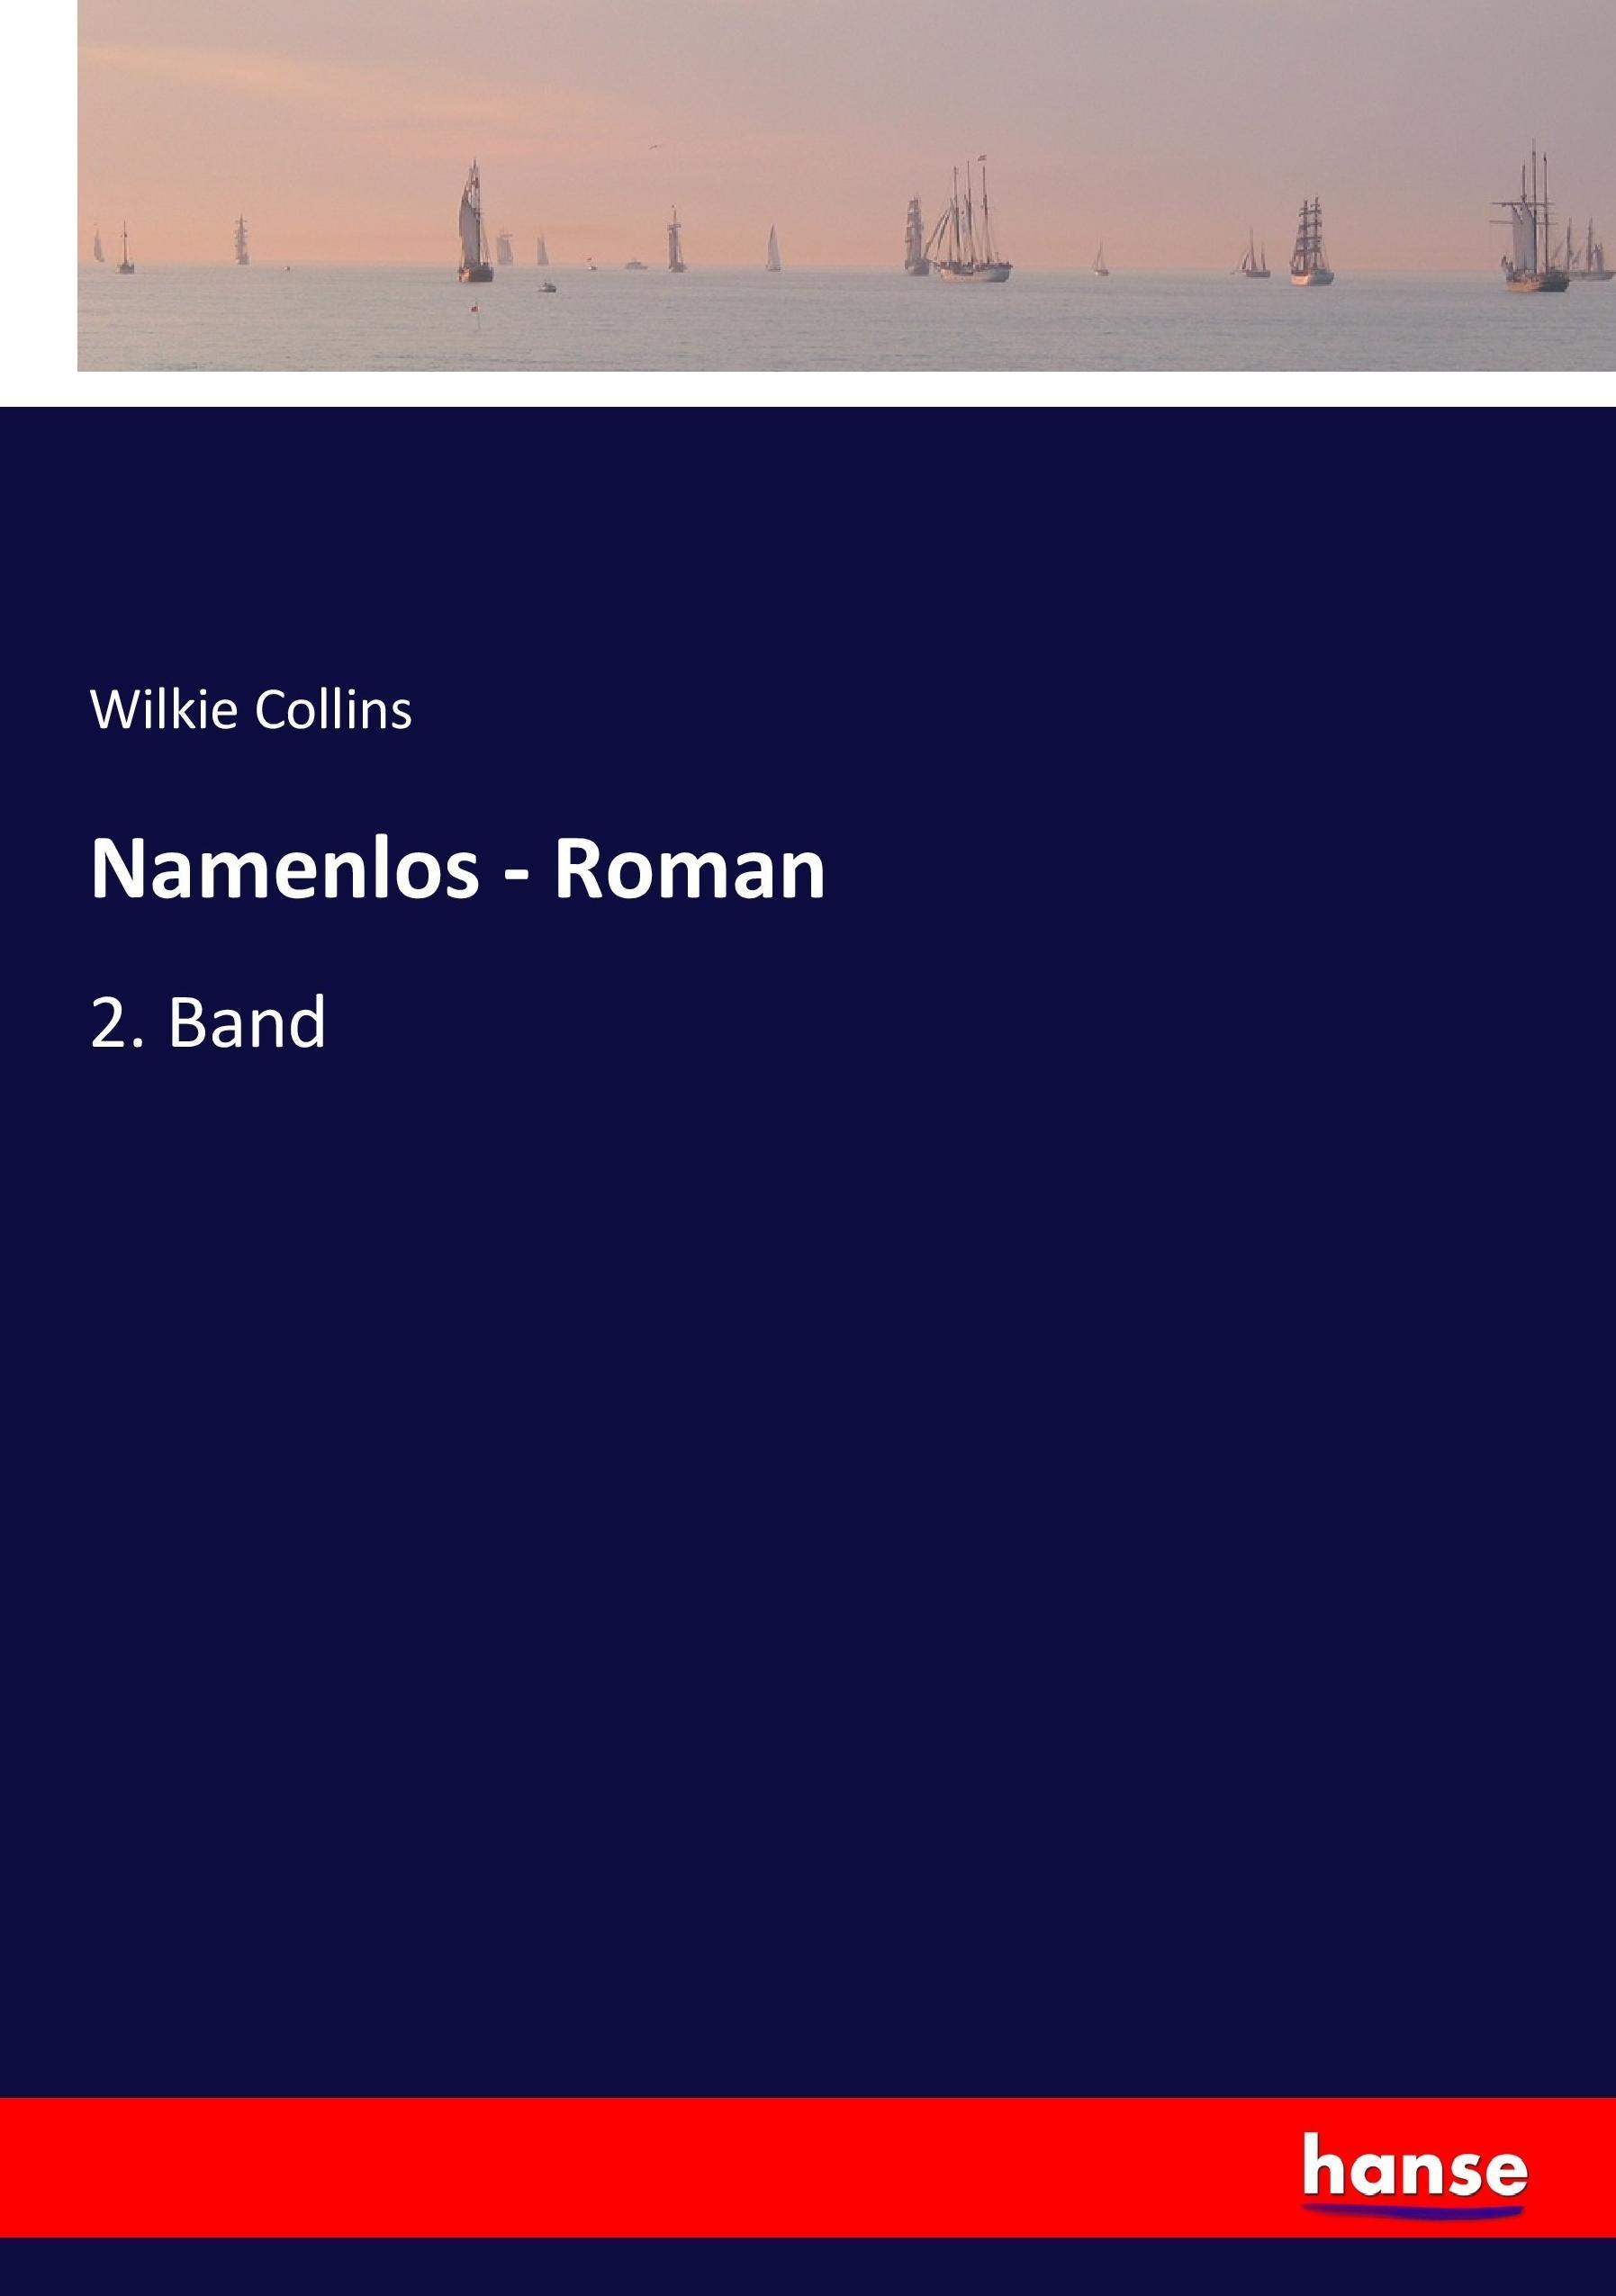 Namenlos - Roman | 2. Band | Wilkie Collins | Taschenbuch | Paperback | 236 S. | Deutsch | 2017 | hansebooks | EAN 9783744645508 - Collins, Wilkie